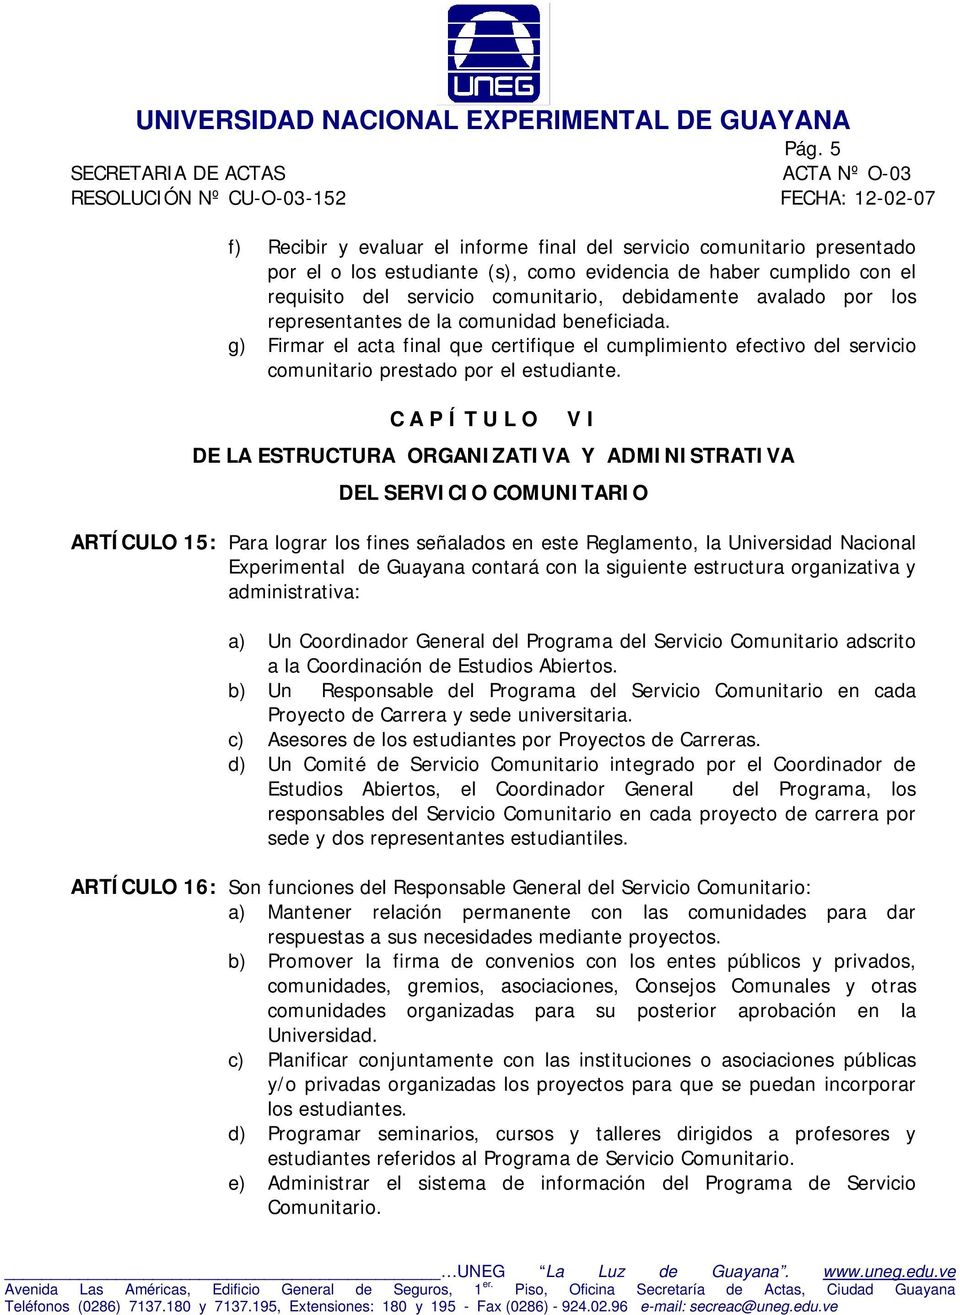 DE LA ESTRUCTURA ORGANIZATIVA Y ADMINISTRATIVA V I DEL SERVICIO COMUNITARIO ARTÍCULO 15: Para lograr los fines señalados en este Reglamento, la Universidad Nacional Experimental de Guayana contará